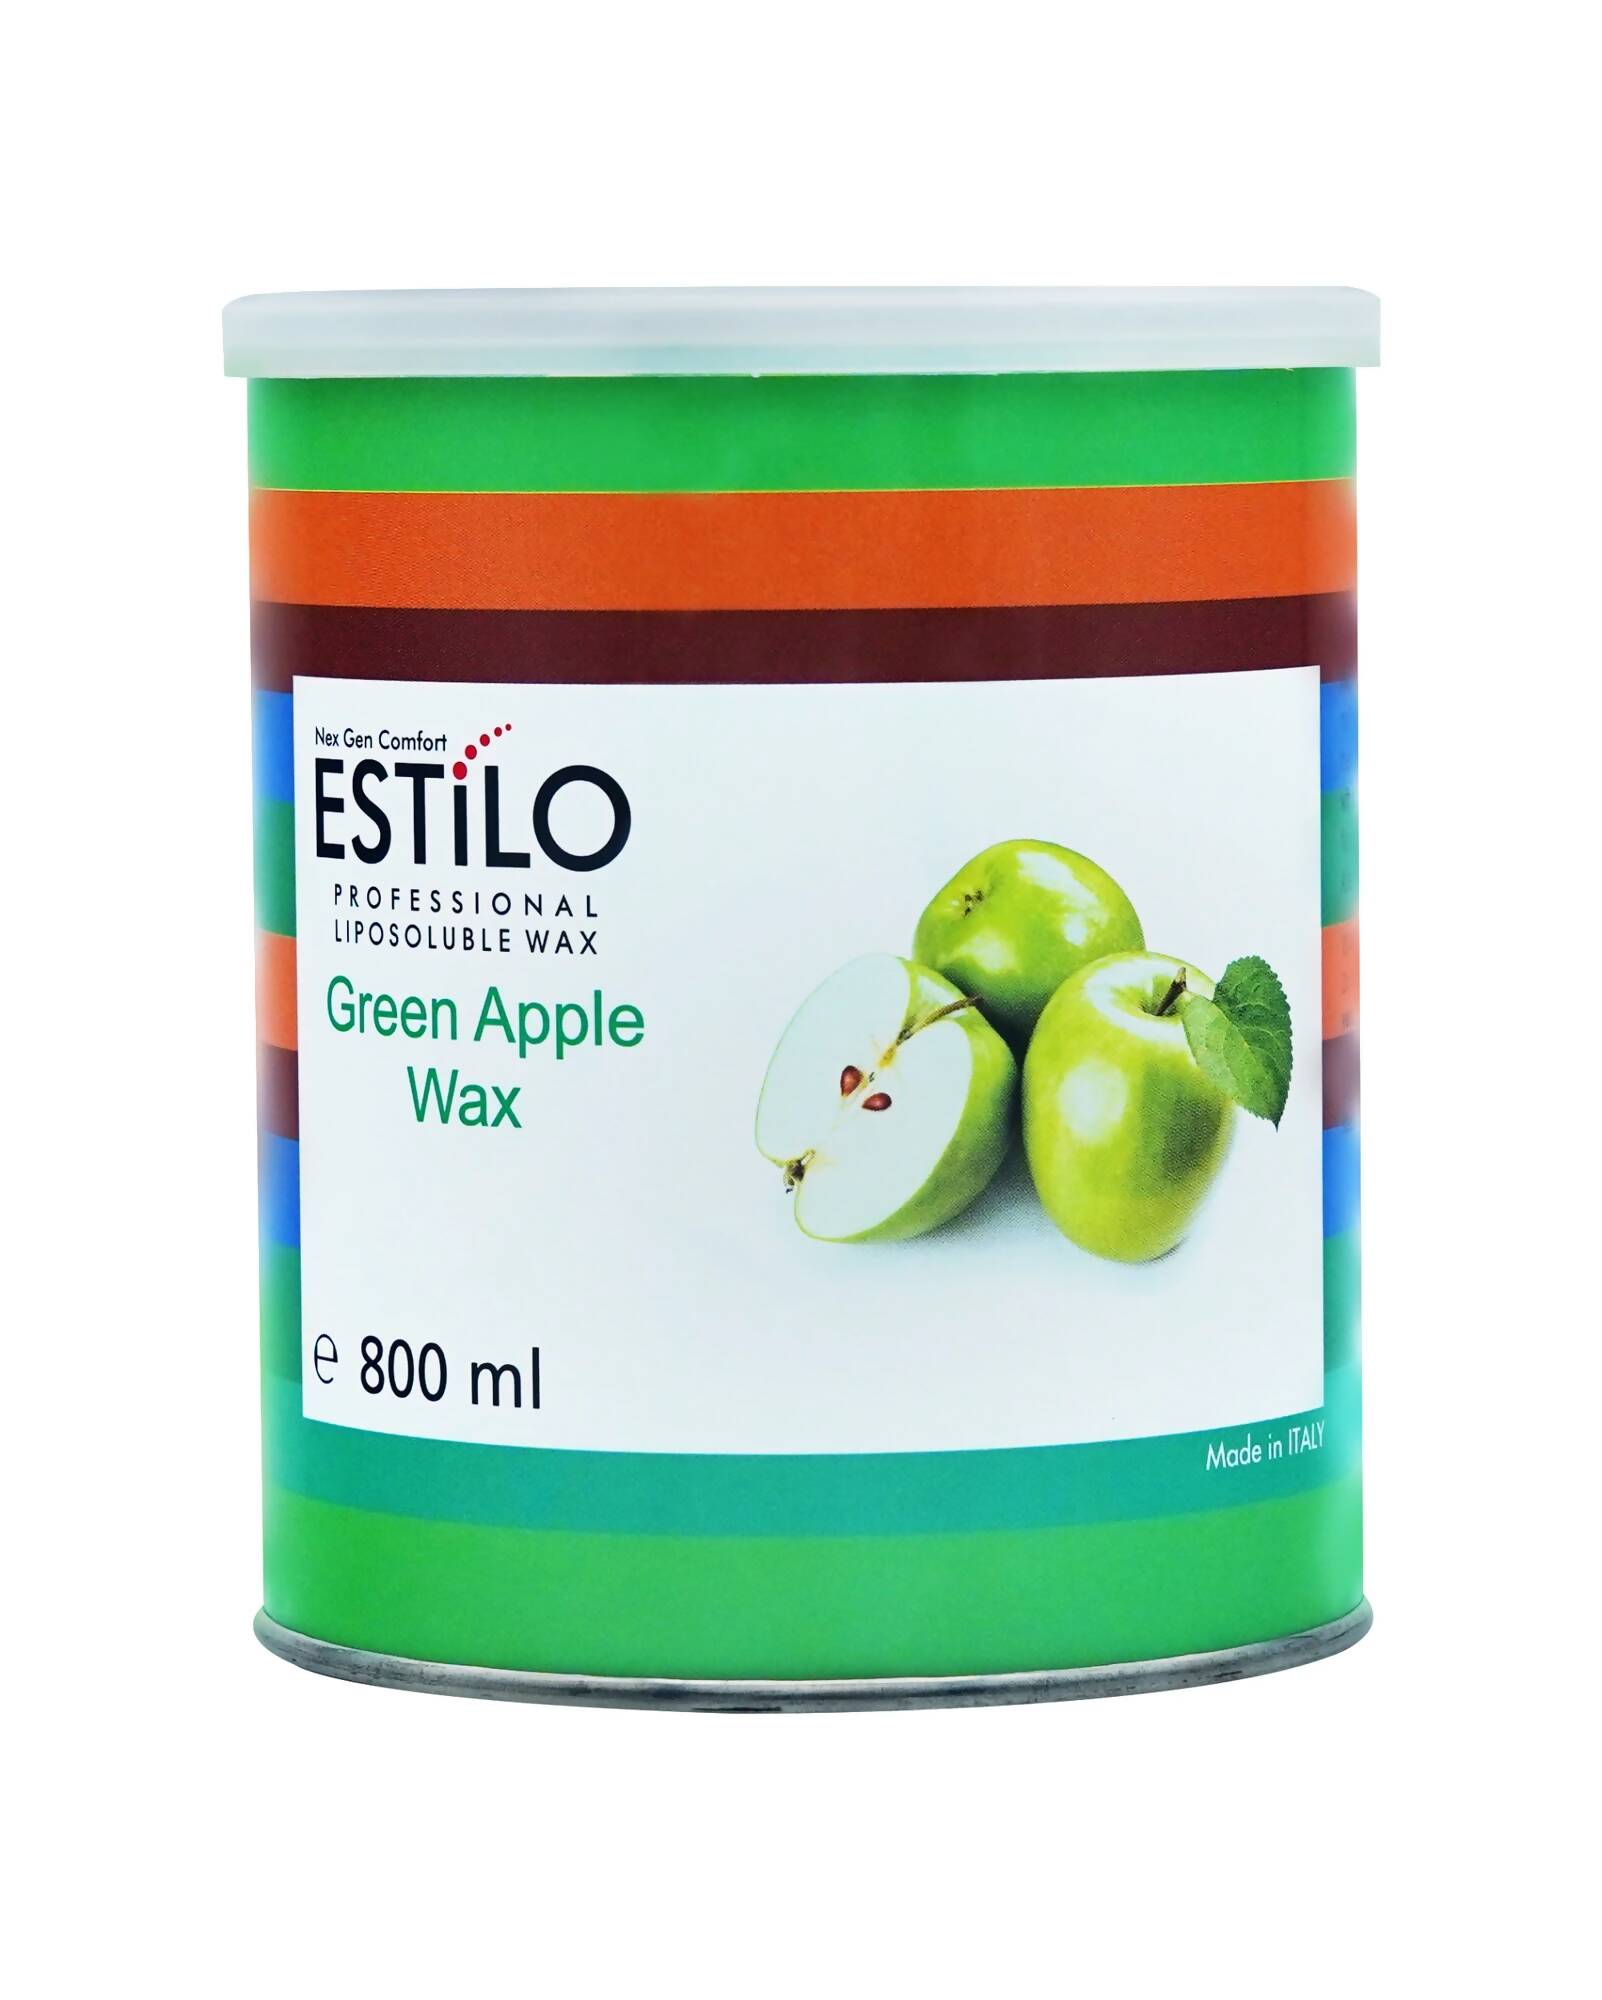 Estilo Green Apple Wax 800ml